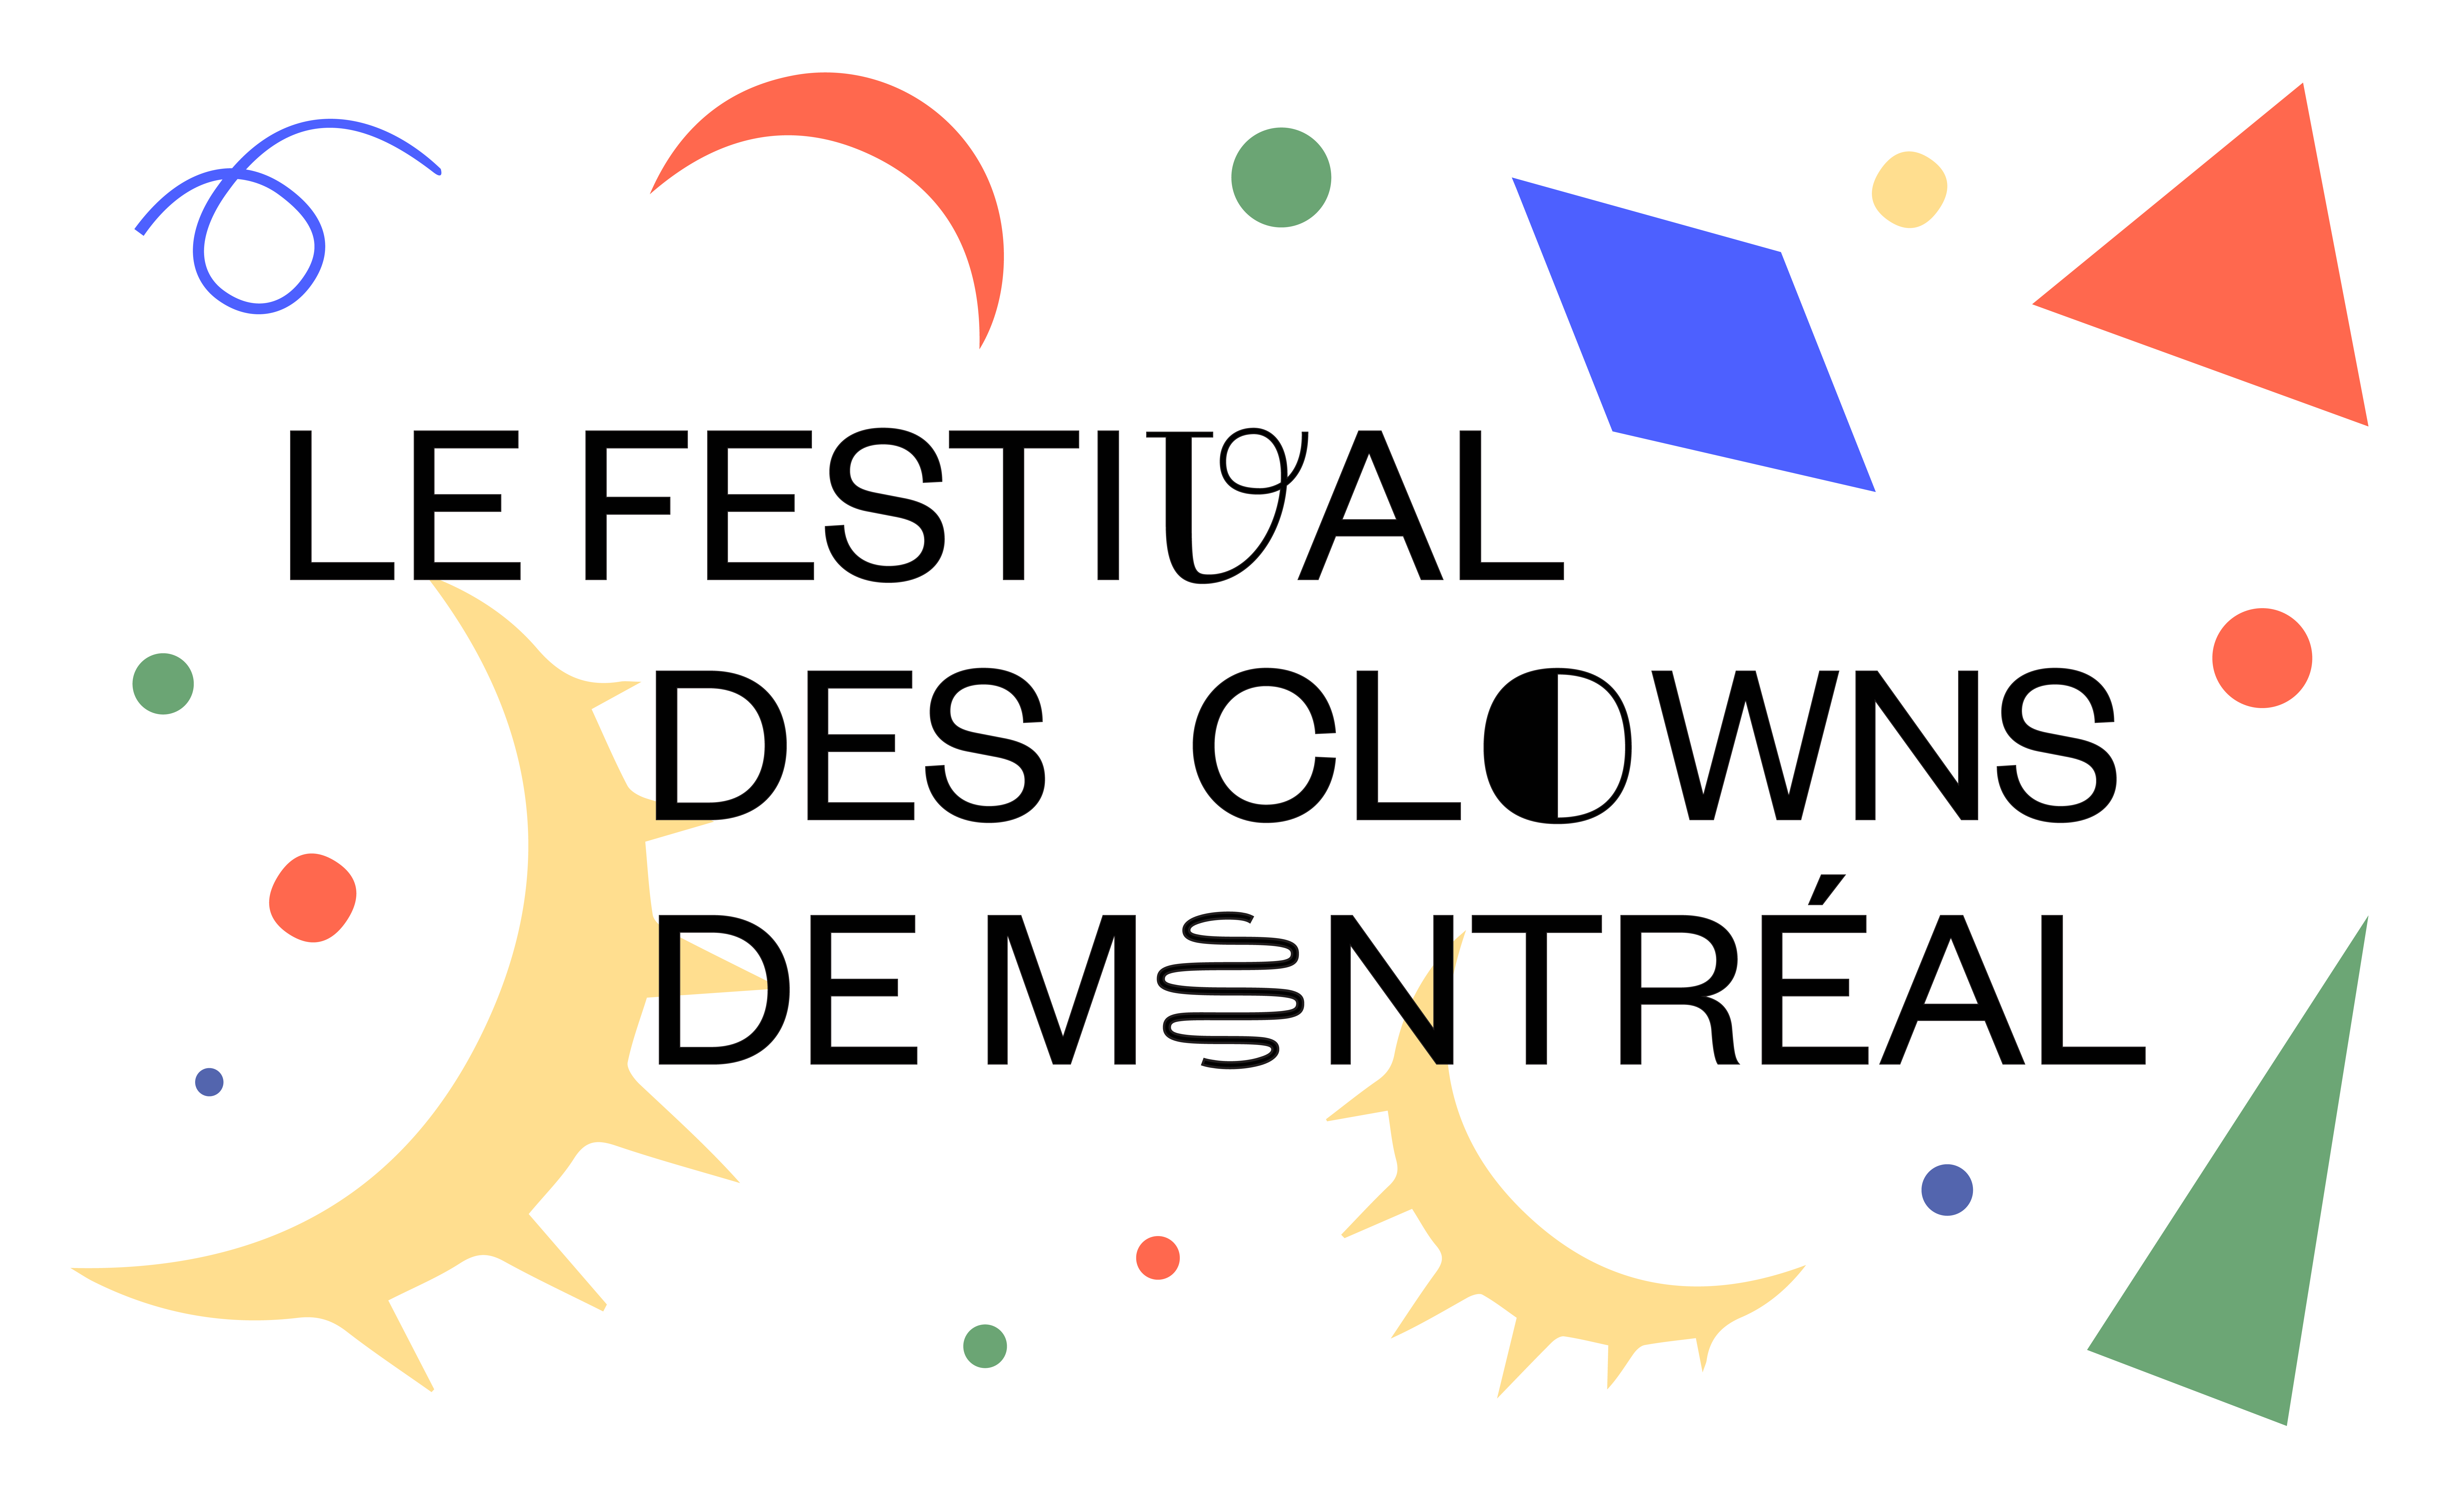 Le Festival des Clowns de Montreal text on a colouful confetti background